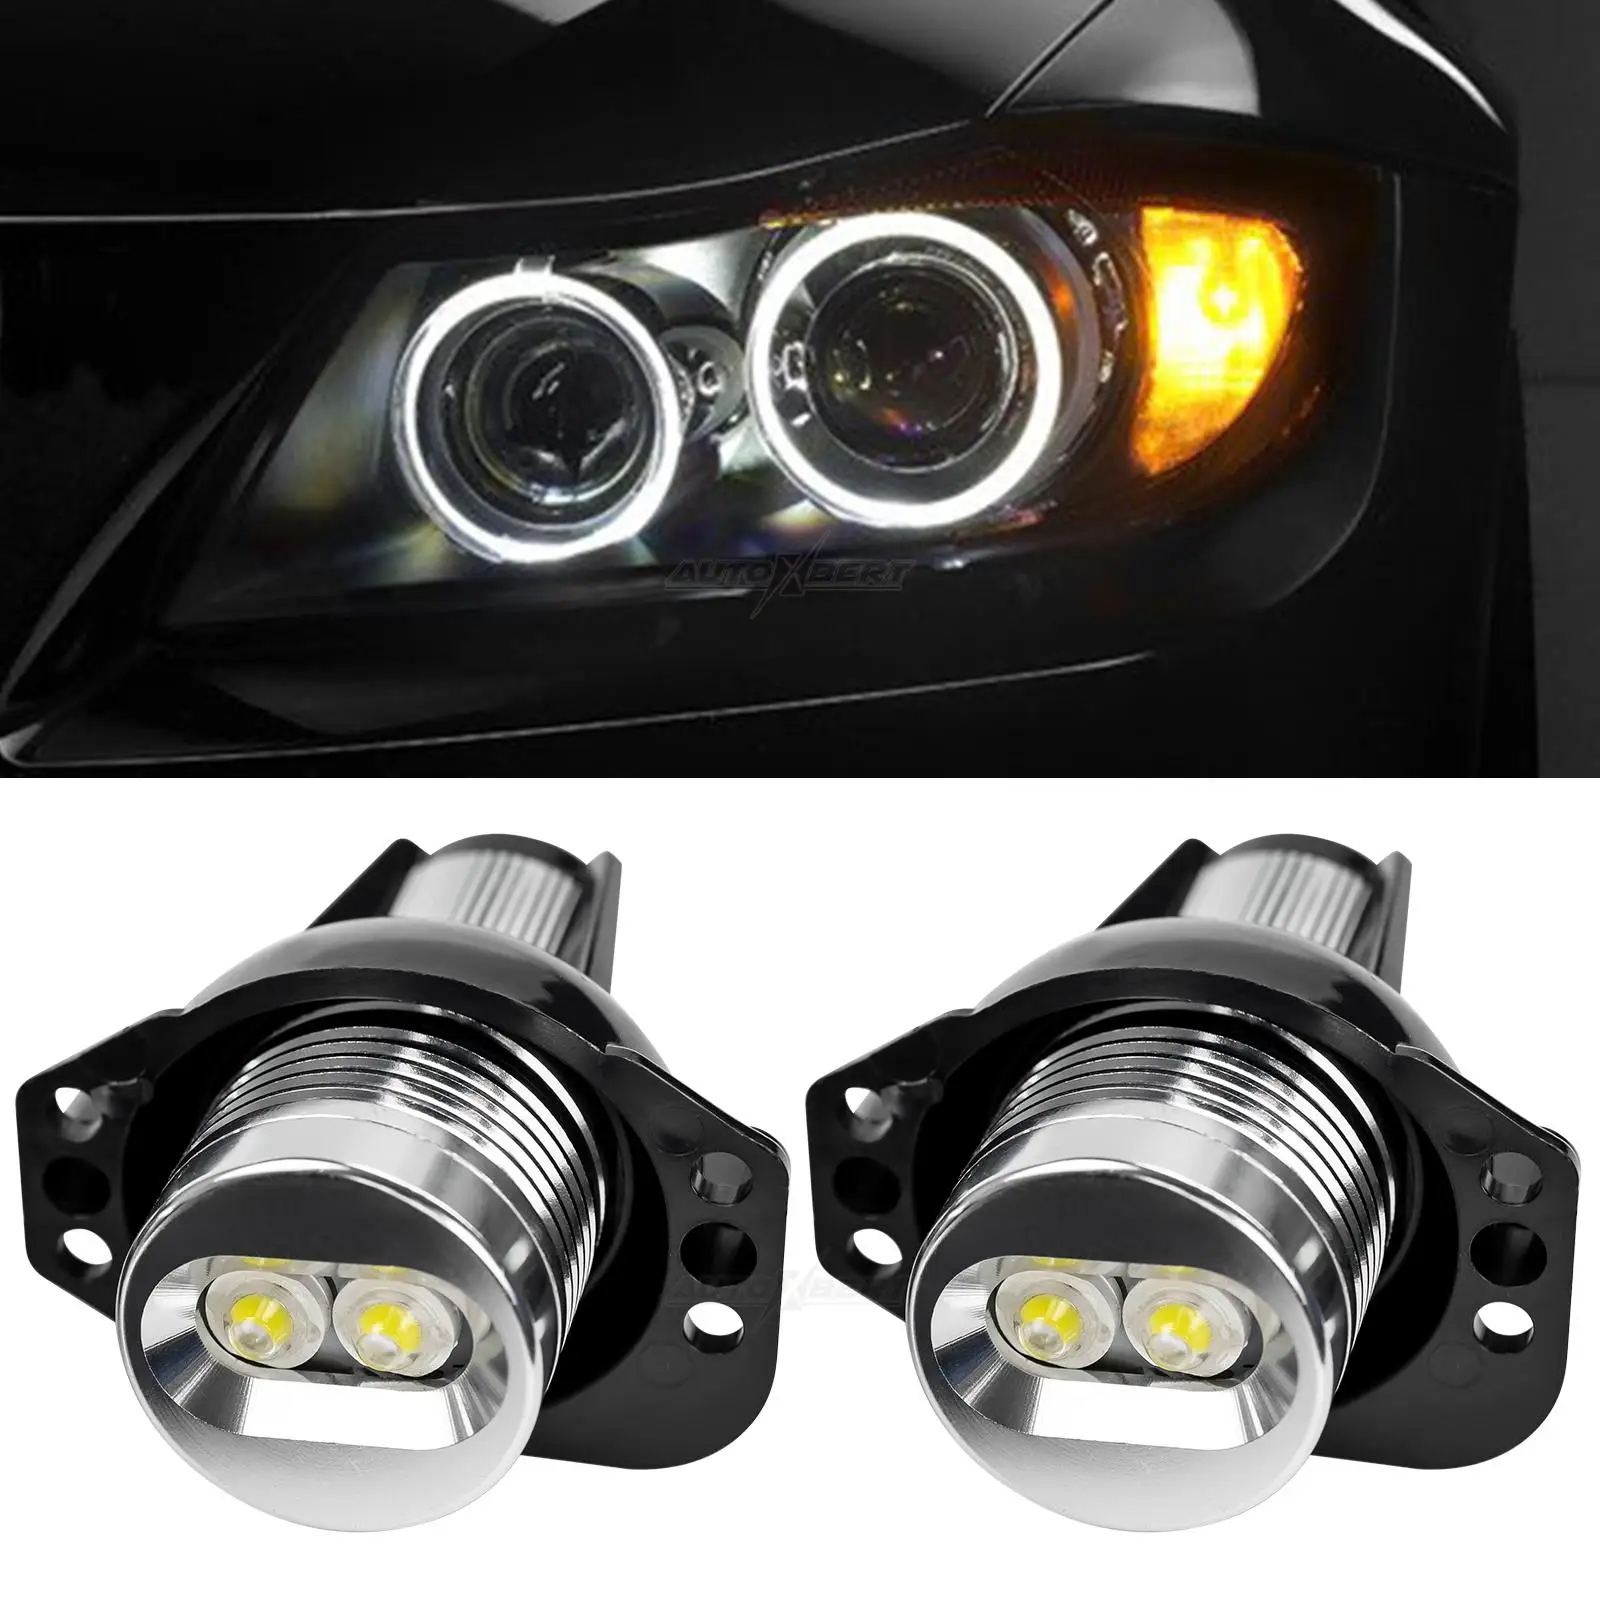 LED Angel Eye Halo Rings Marker Light Headlight Bulb 6W For BMW 3 Series E90 E91 2005-2008 325i 325xi 328i 328xi 330i 335i 335xi